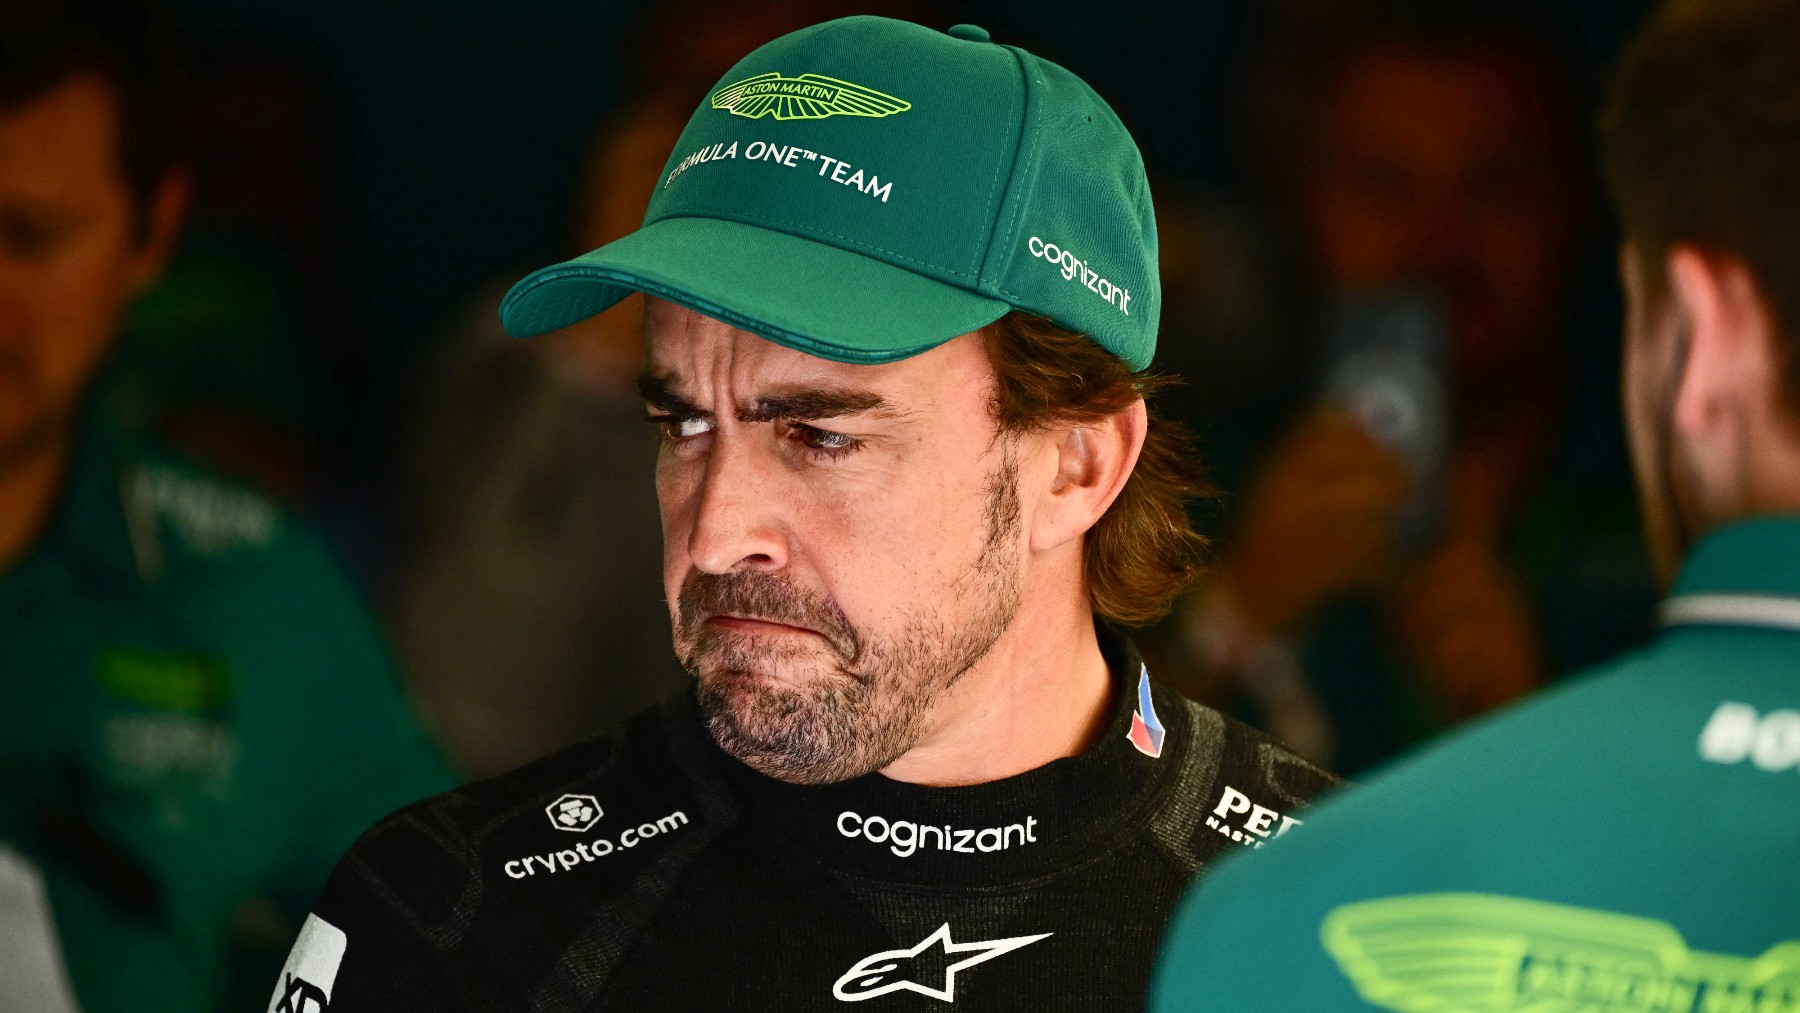 Fernando Alonso vuelve a la escena del crimen en Singapur 15 años después(AFP)